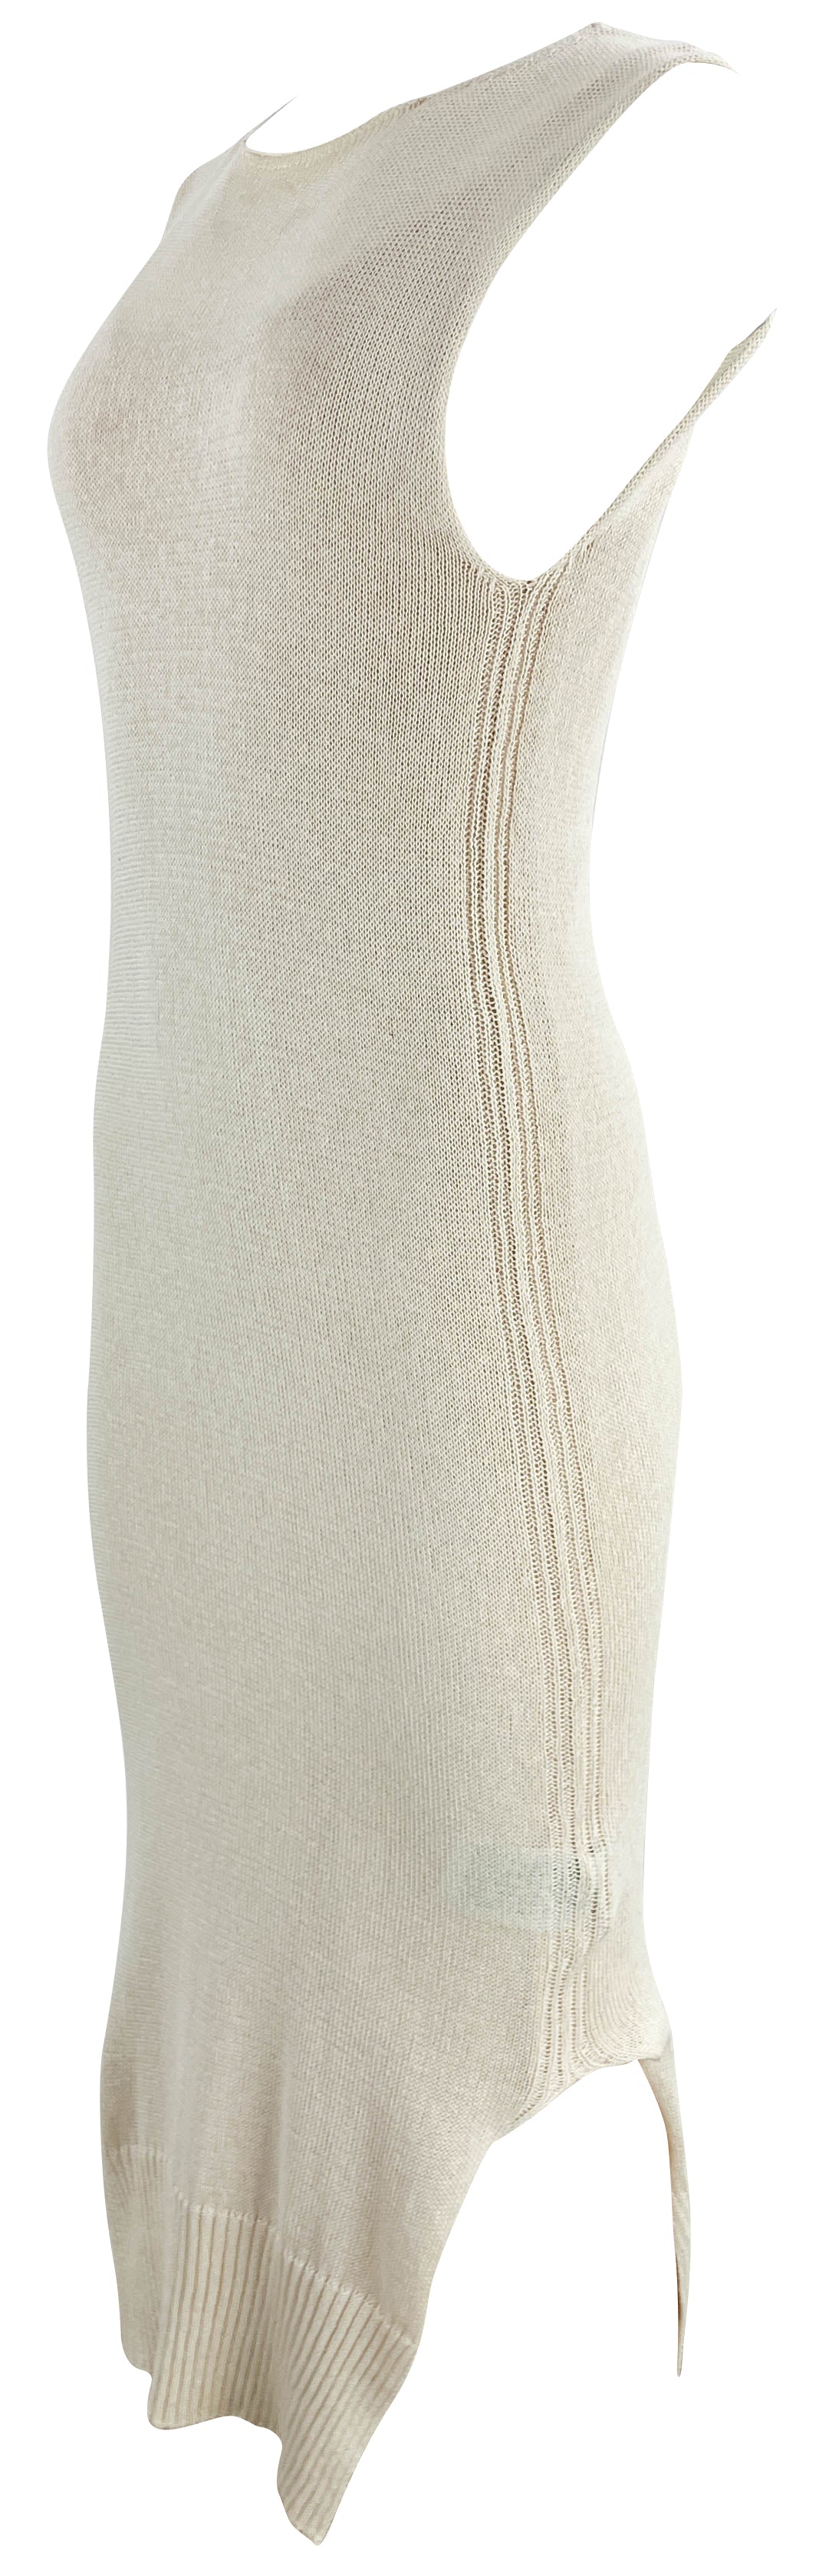 Jil Sander Knit Midi Dress in Cream - Discounts on Jil Sander at UAL